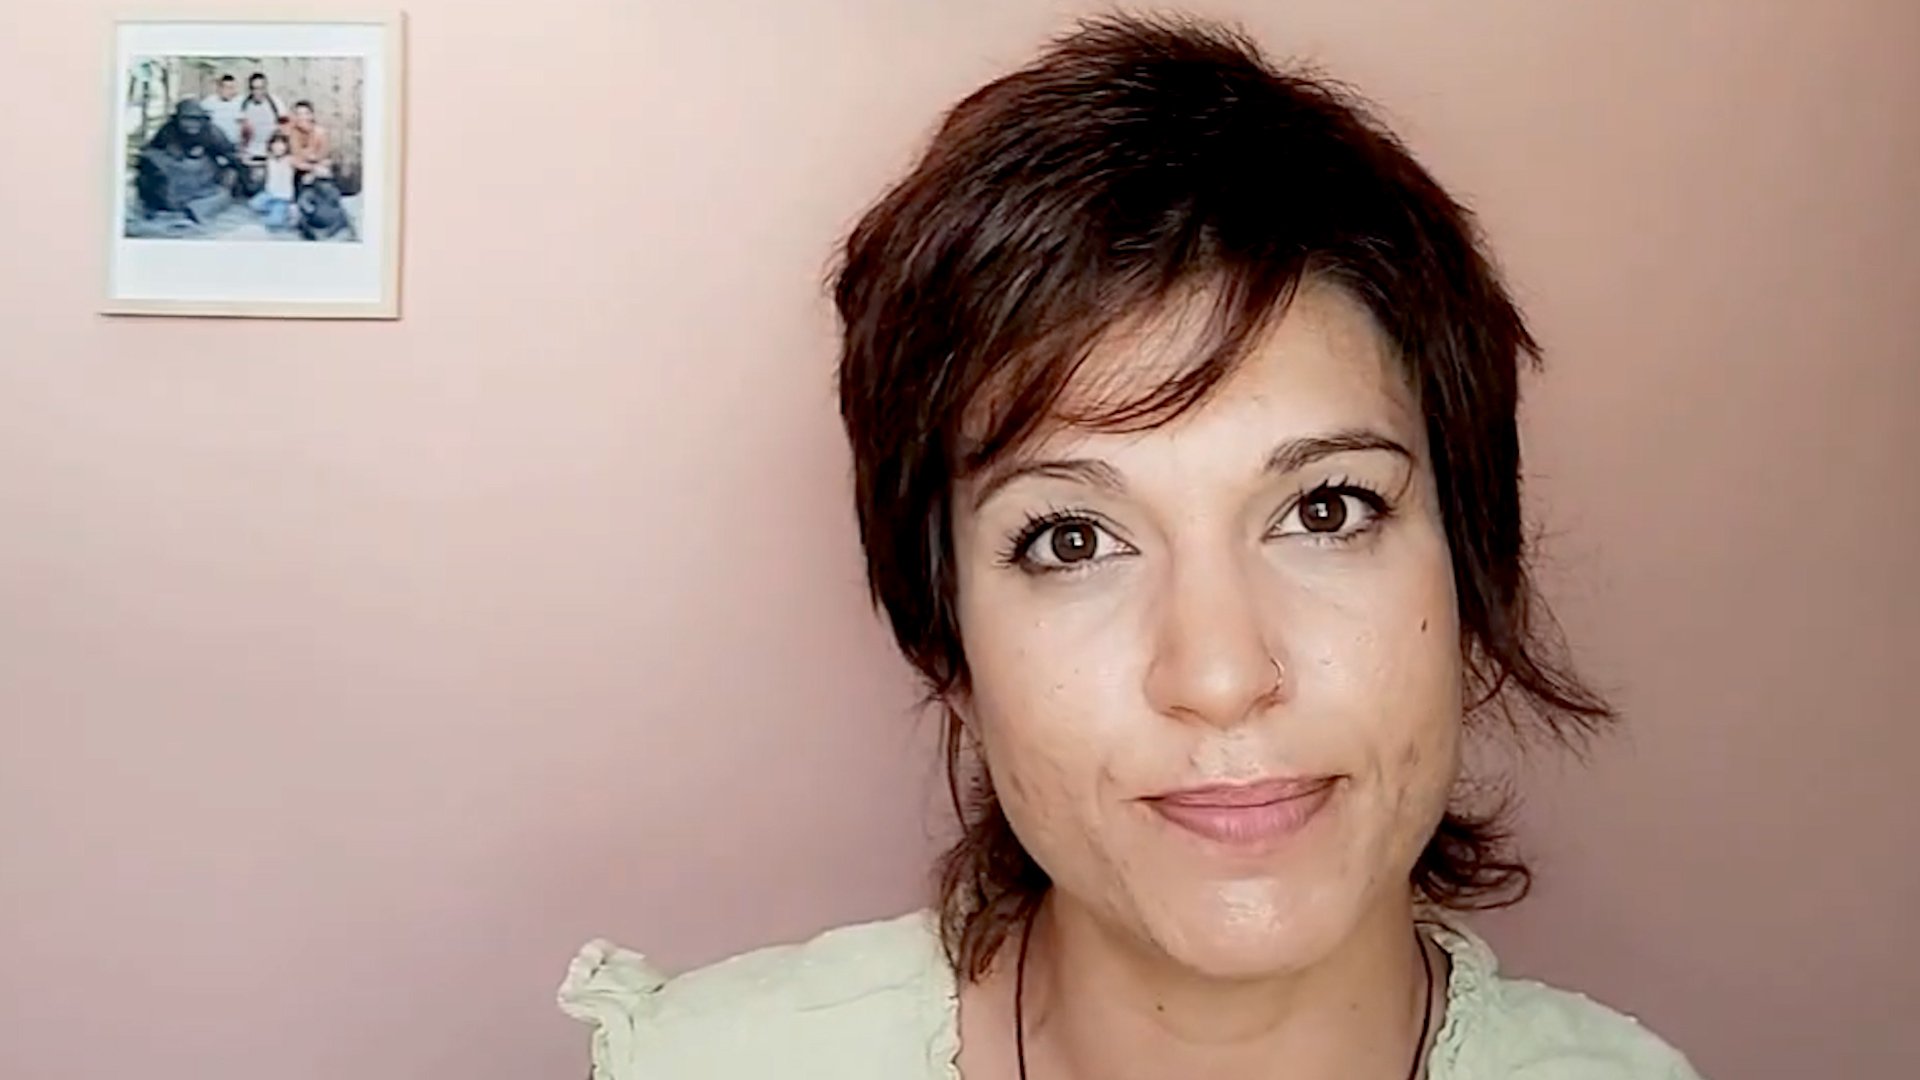 Vídeo | Bea Talegón: "Los toques de atención vienen desde fuera"